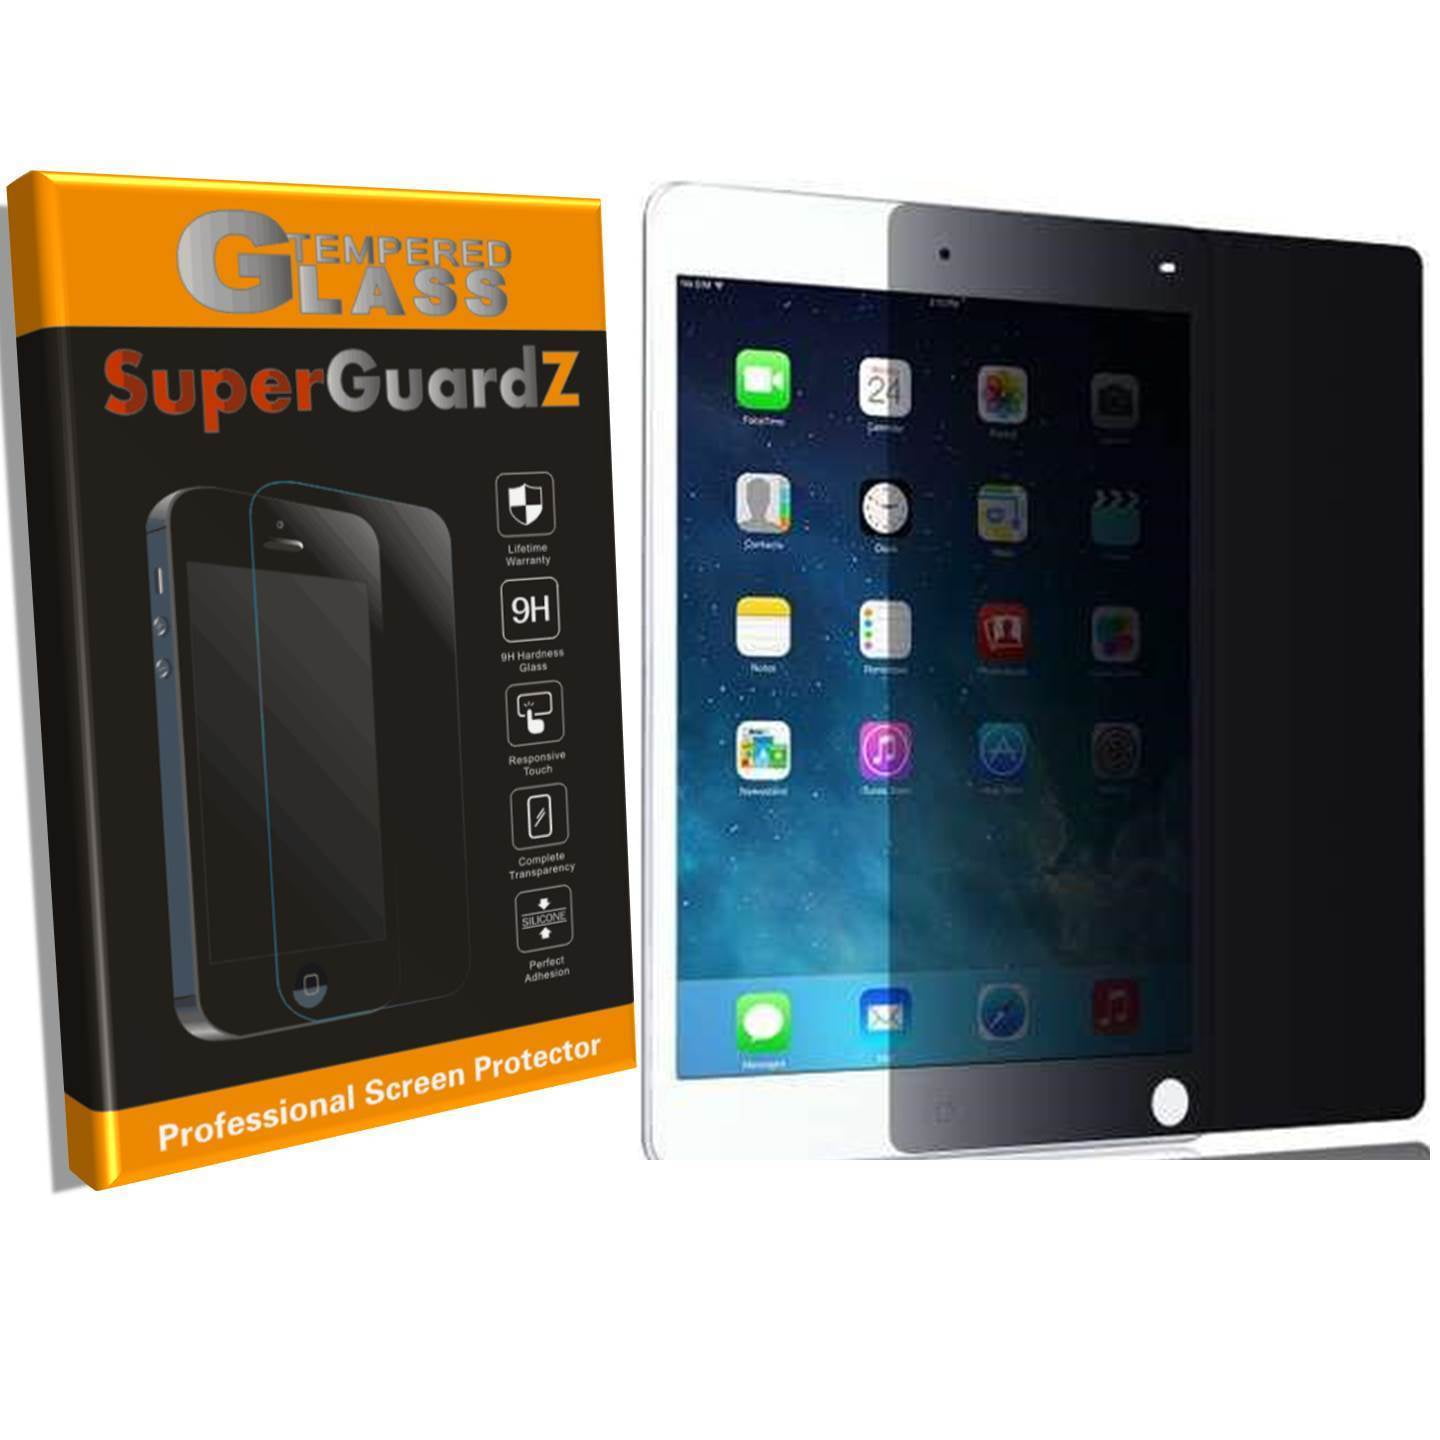 Liquipel Safeguard Protection for Apple iPad Mini 1/2/3 New 